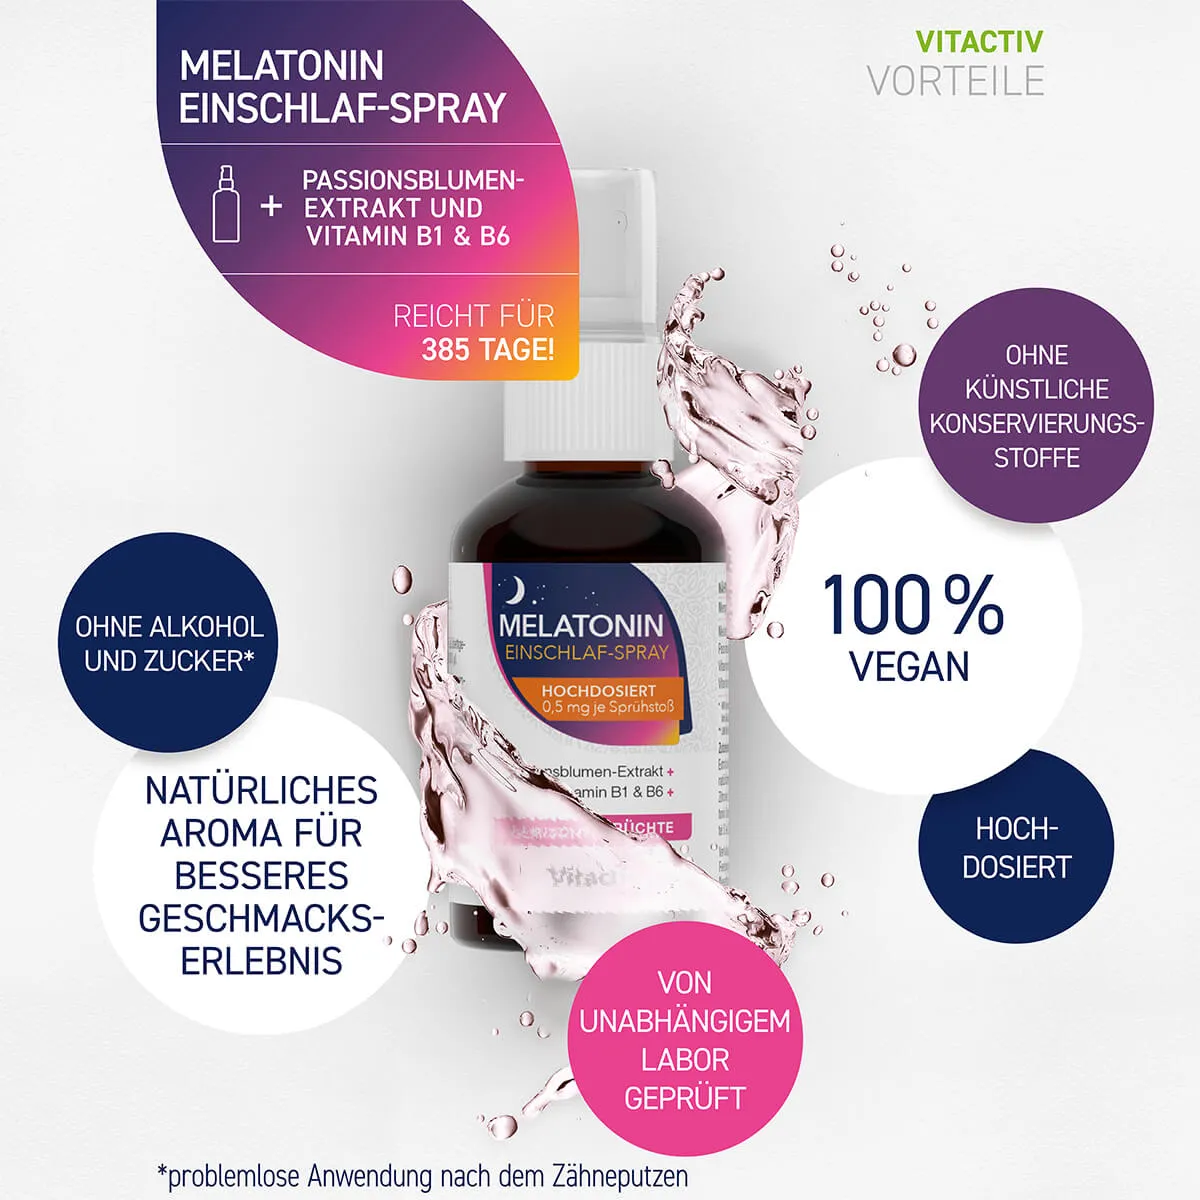 Melatonin Einschlaf-Spray - Gemischte Früchte - 50 ml